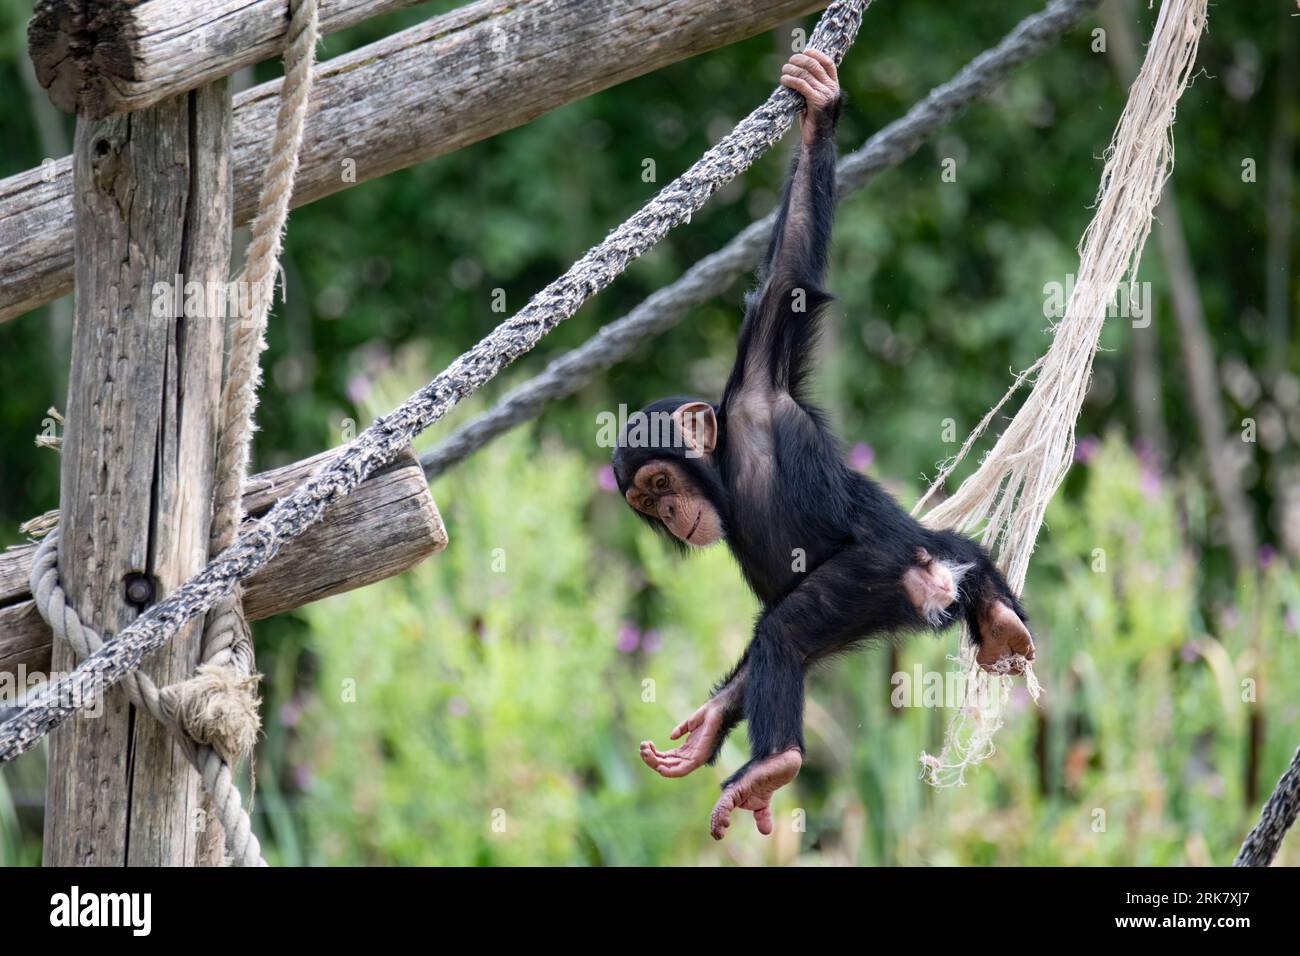 Un singe brun est perché sur une branche d'arbre, agrippant à une corde blanche suspendue à l'arbre dans une enceinte de zoo en plein air Banque D'Images